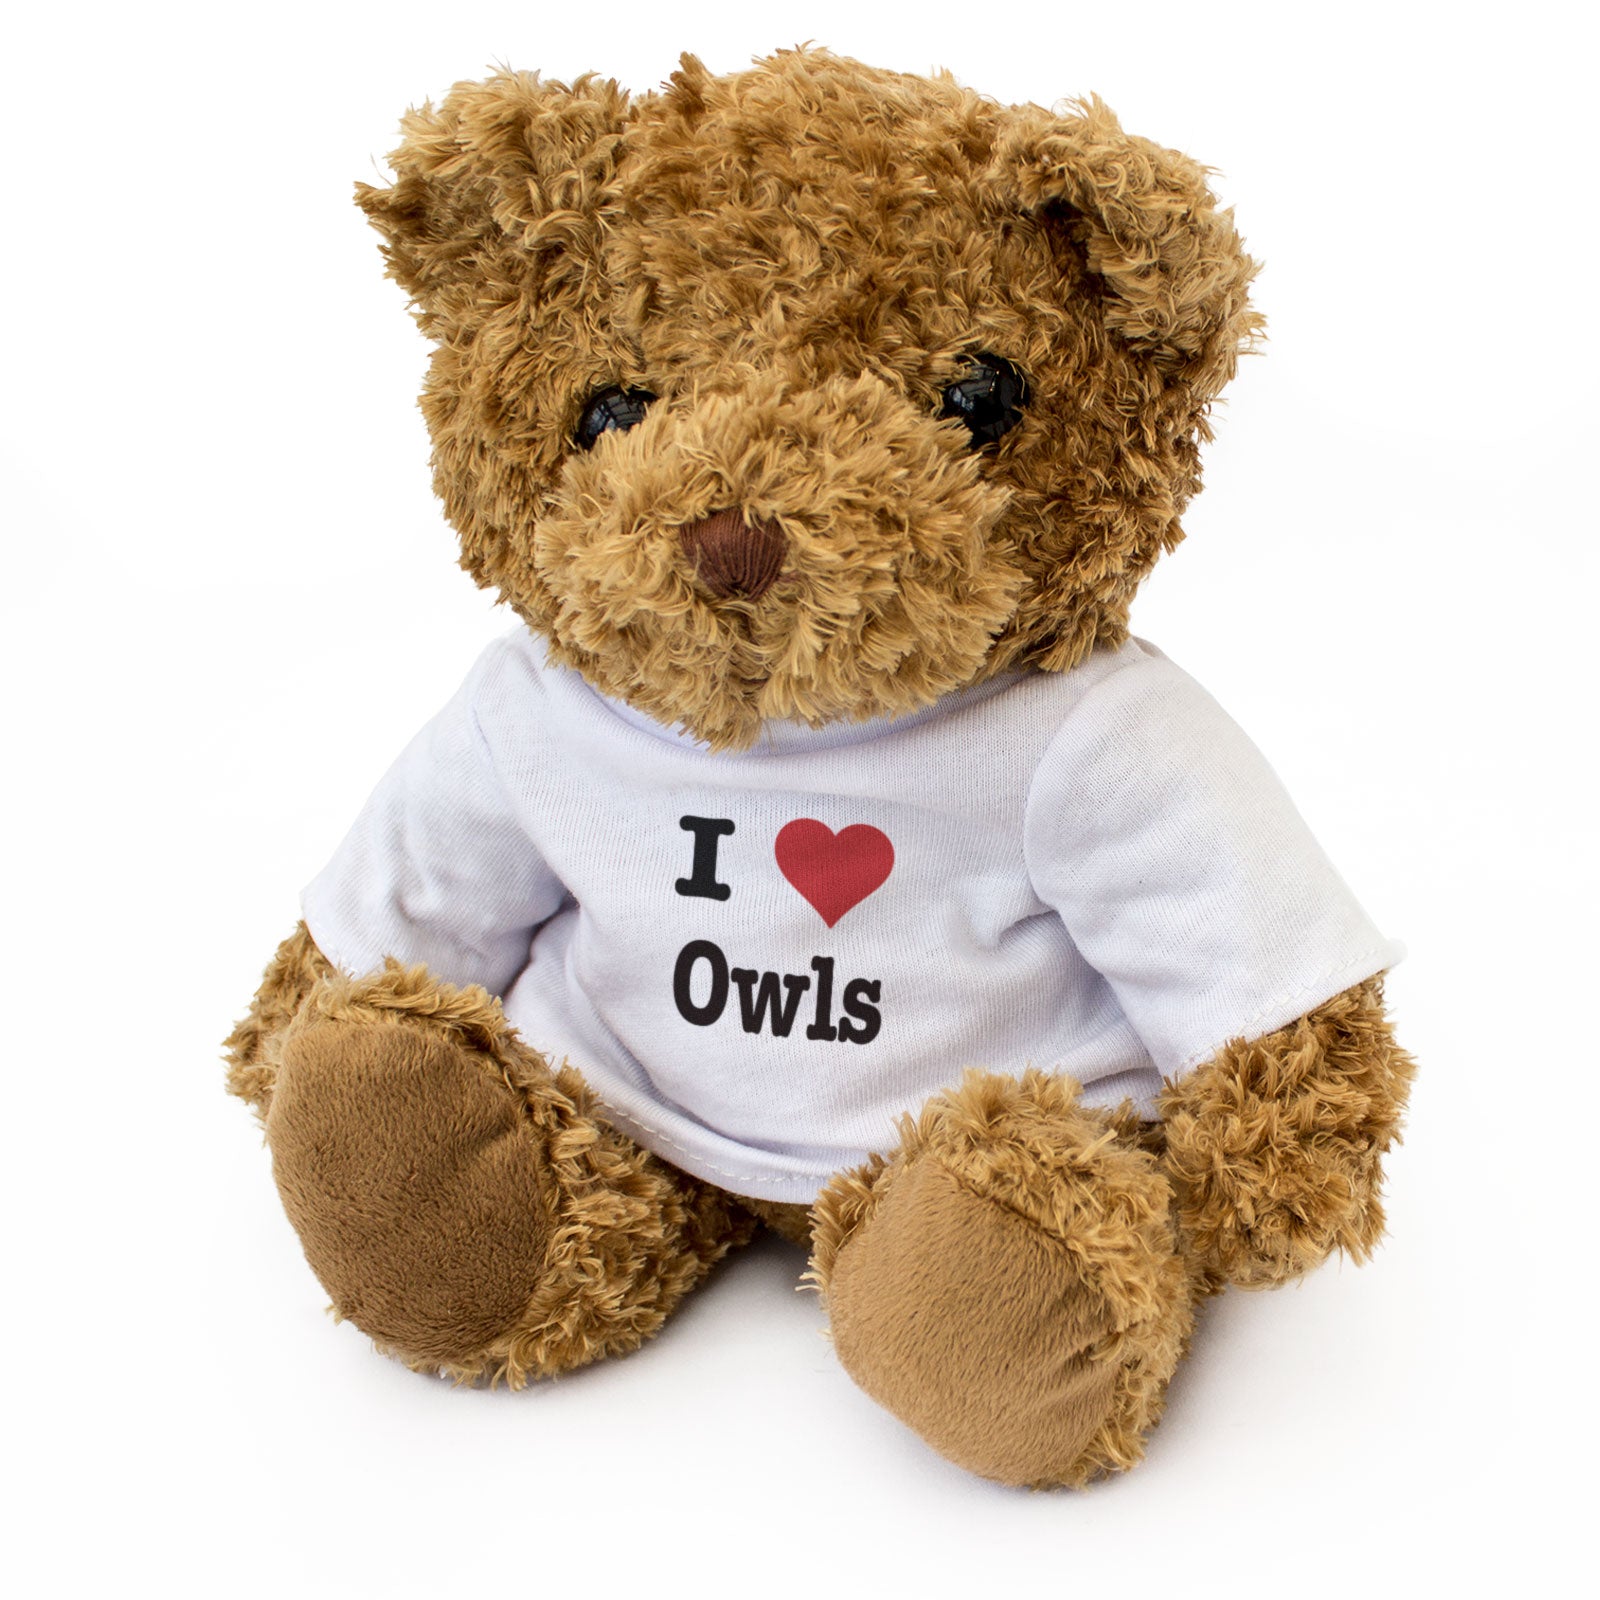 I Love Owls - Teddy Bear